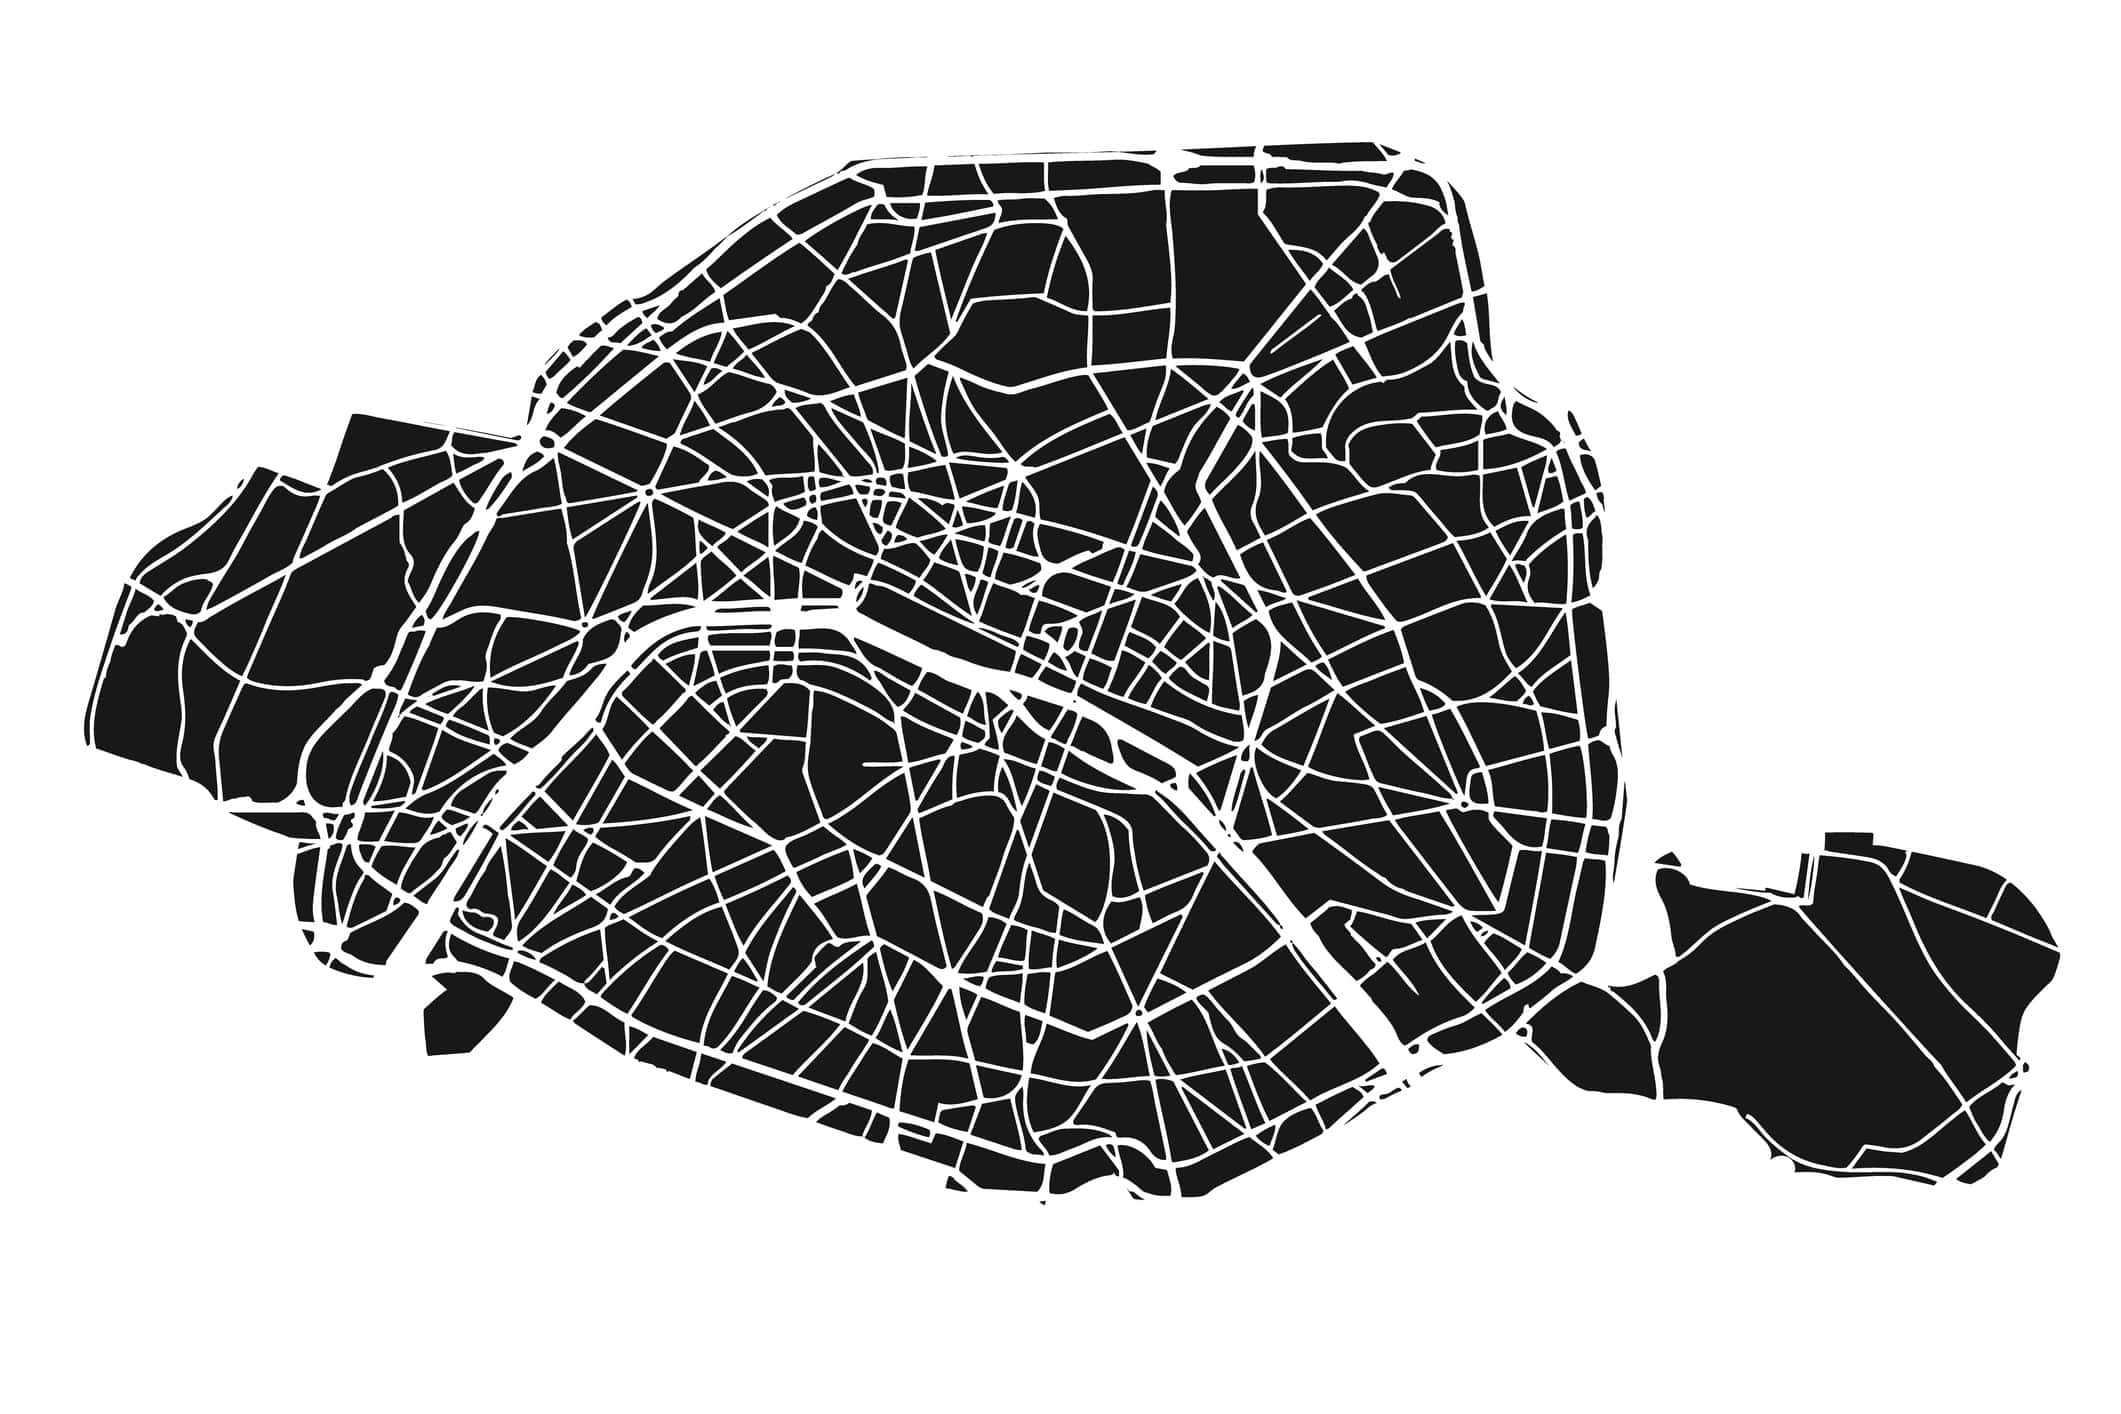 Nuova e pertinente mappa dettagliata di Parigi